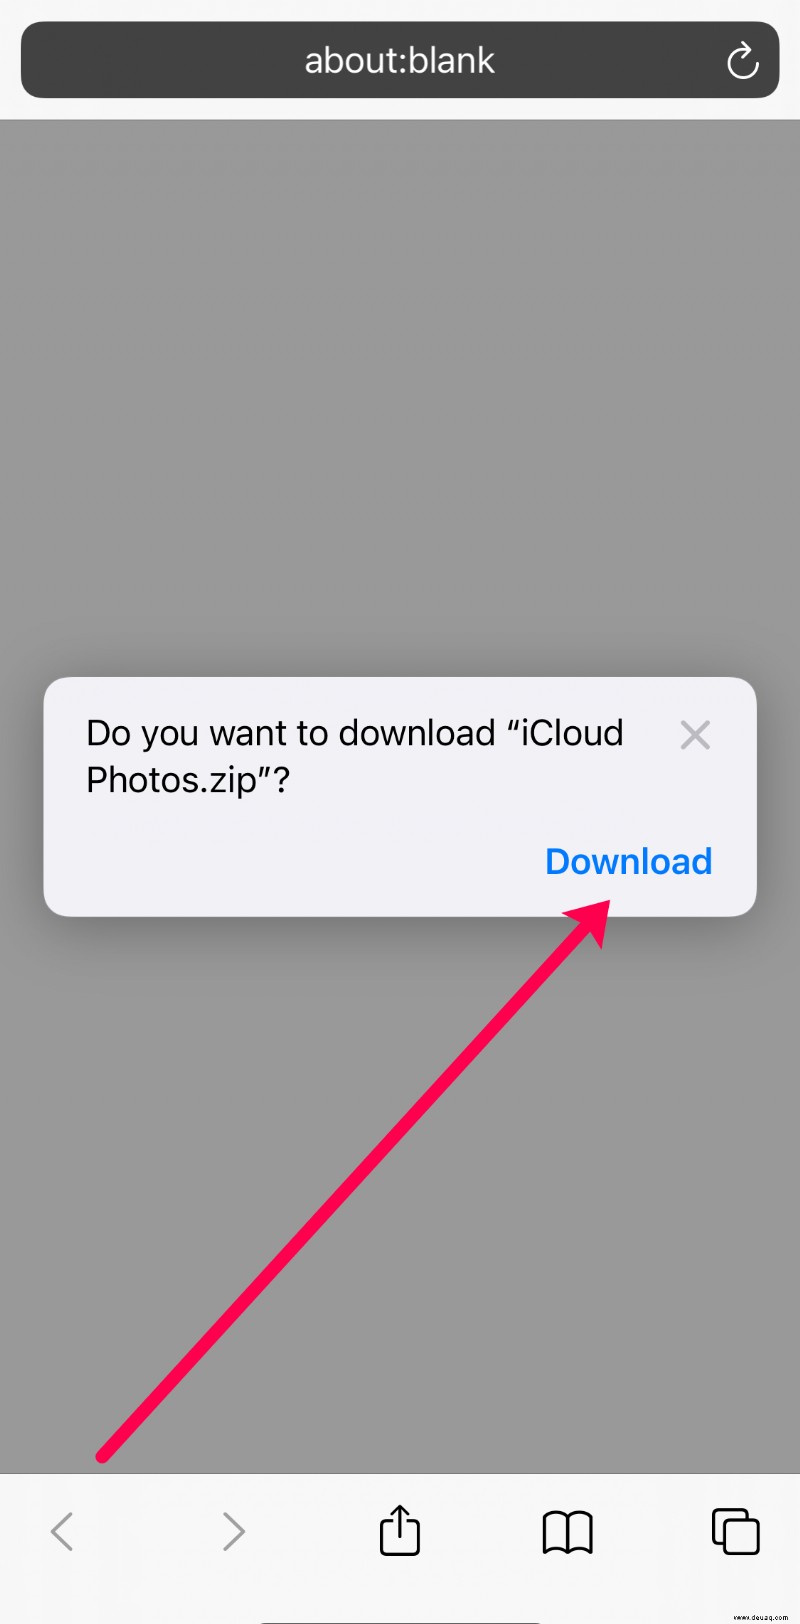 So laden Sie Fotos von iCloud herunter